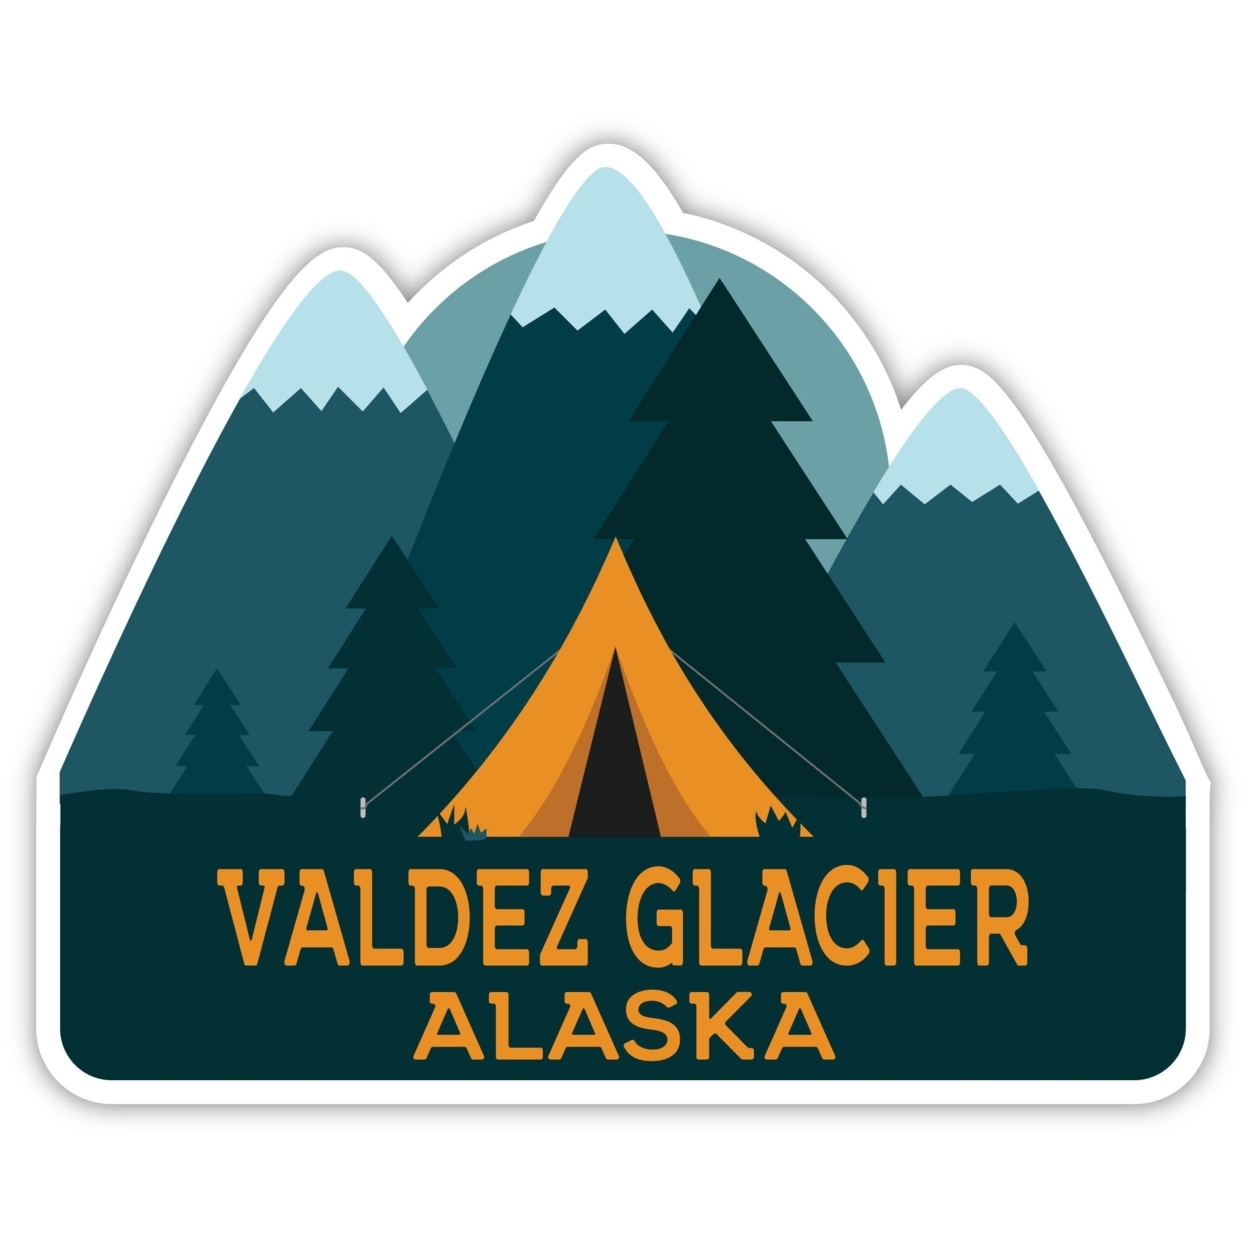 Valdez Glacier Alaska Souvenir Decorative Stickers (Choose Theme And Size) - Single Unit, 4-Inch, Adventures Awaits